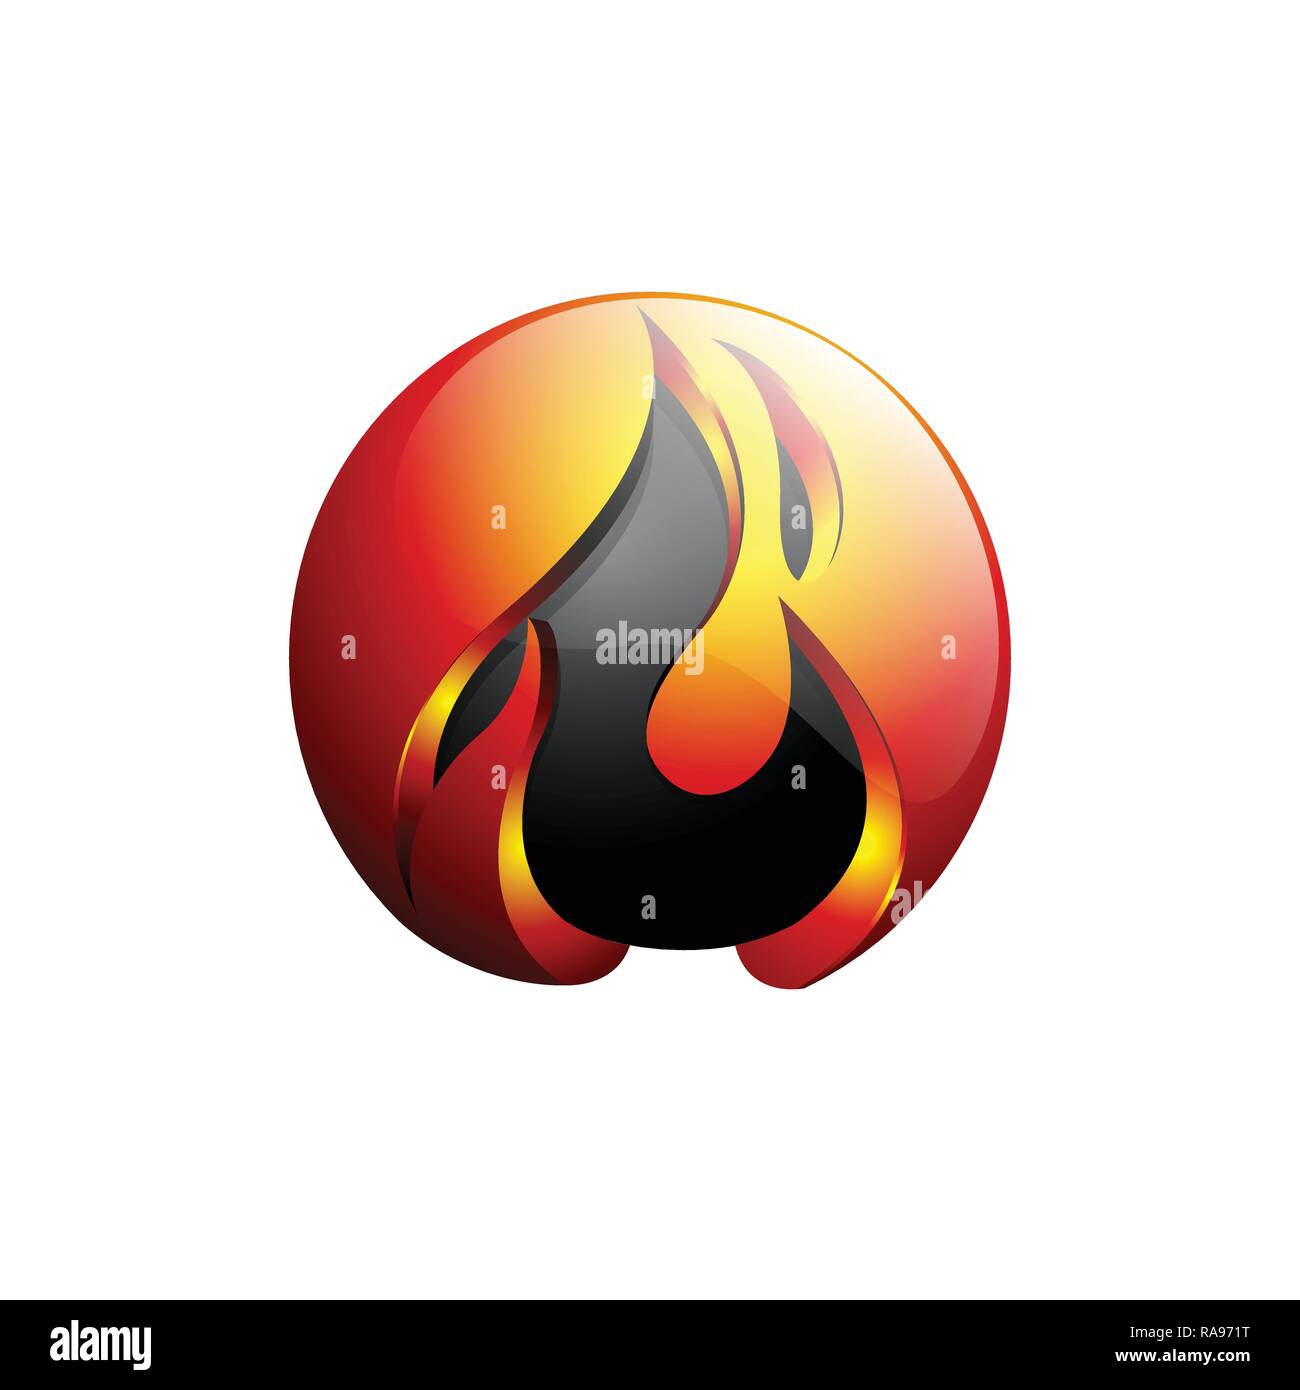 Konzept Design Flamme Feuer Ball logo Vorlage in Orange und Grau-Vektor Stock Vektor